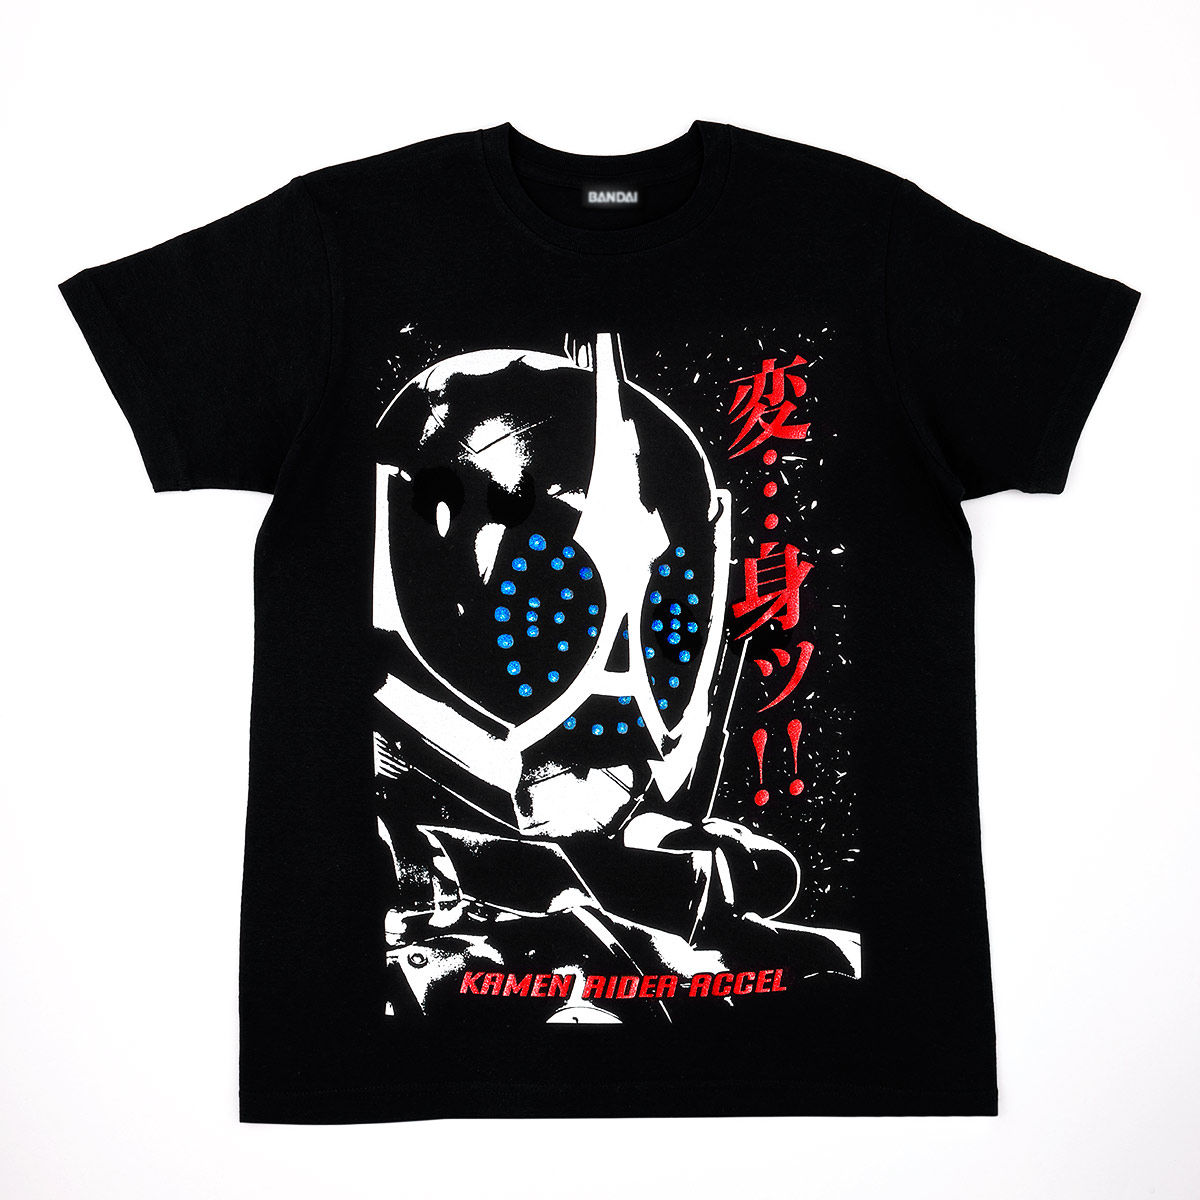 Kamen Rider W Climax Scene T-shirt - Kamen Rider Accel ver.